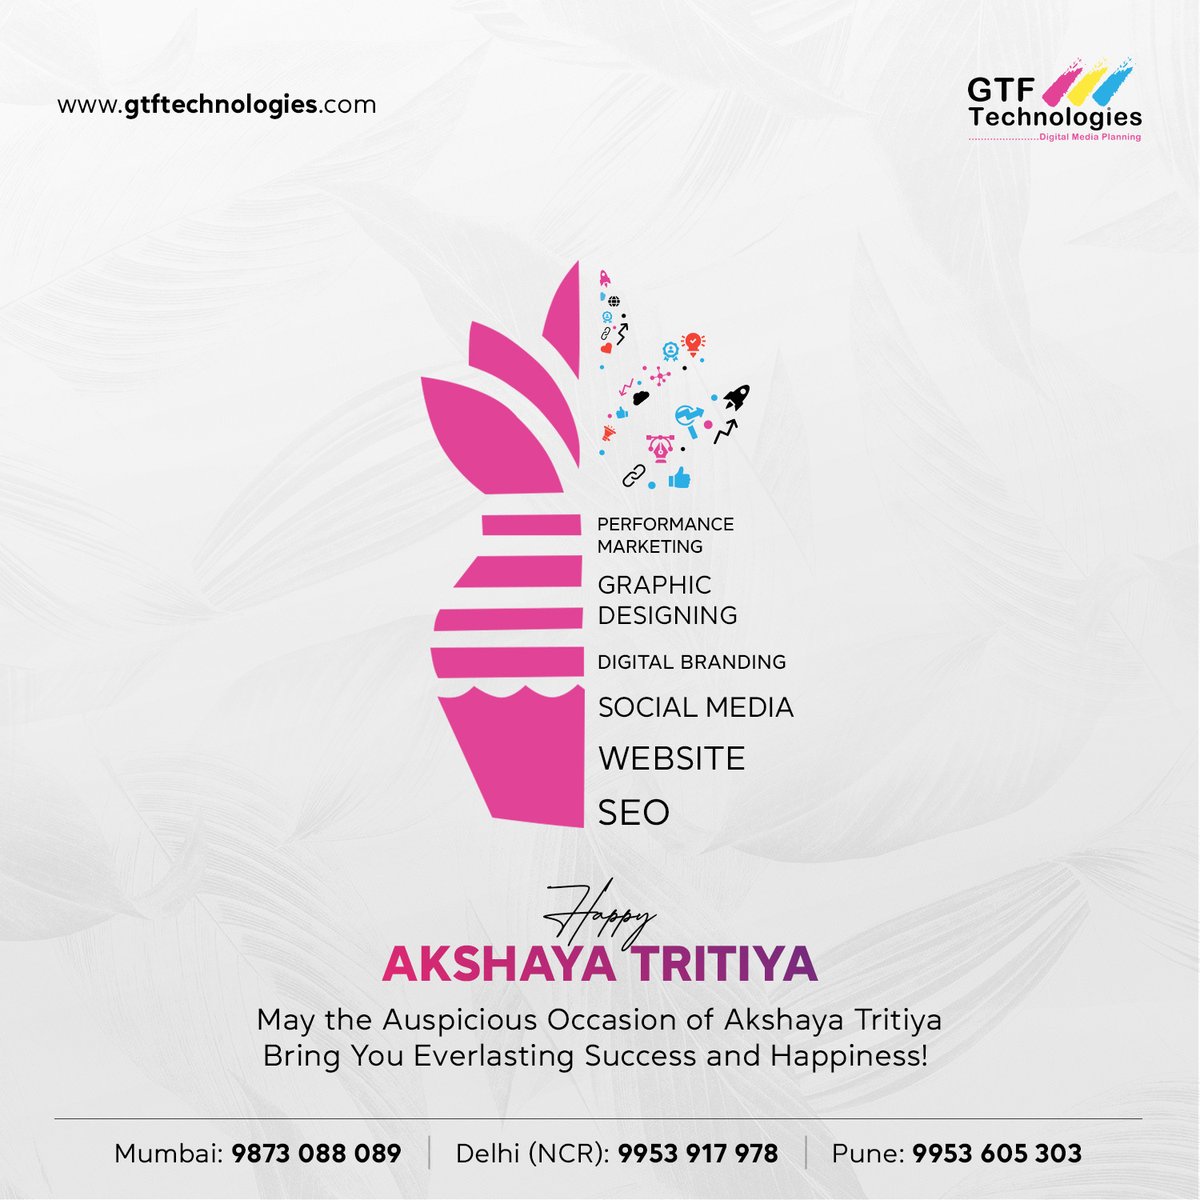 May the auspicious occasion of Akshaya Tritiya bring prosperity and abundance to your life! 
#AkshayaTritiya #Prosperity #Abundance #GoodWishes #GTFtechnologies #digitalmarketingagency #realestatemarketingagency #realestateagency #realestatemarketingagencynoida #mumbai #pune